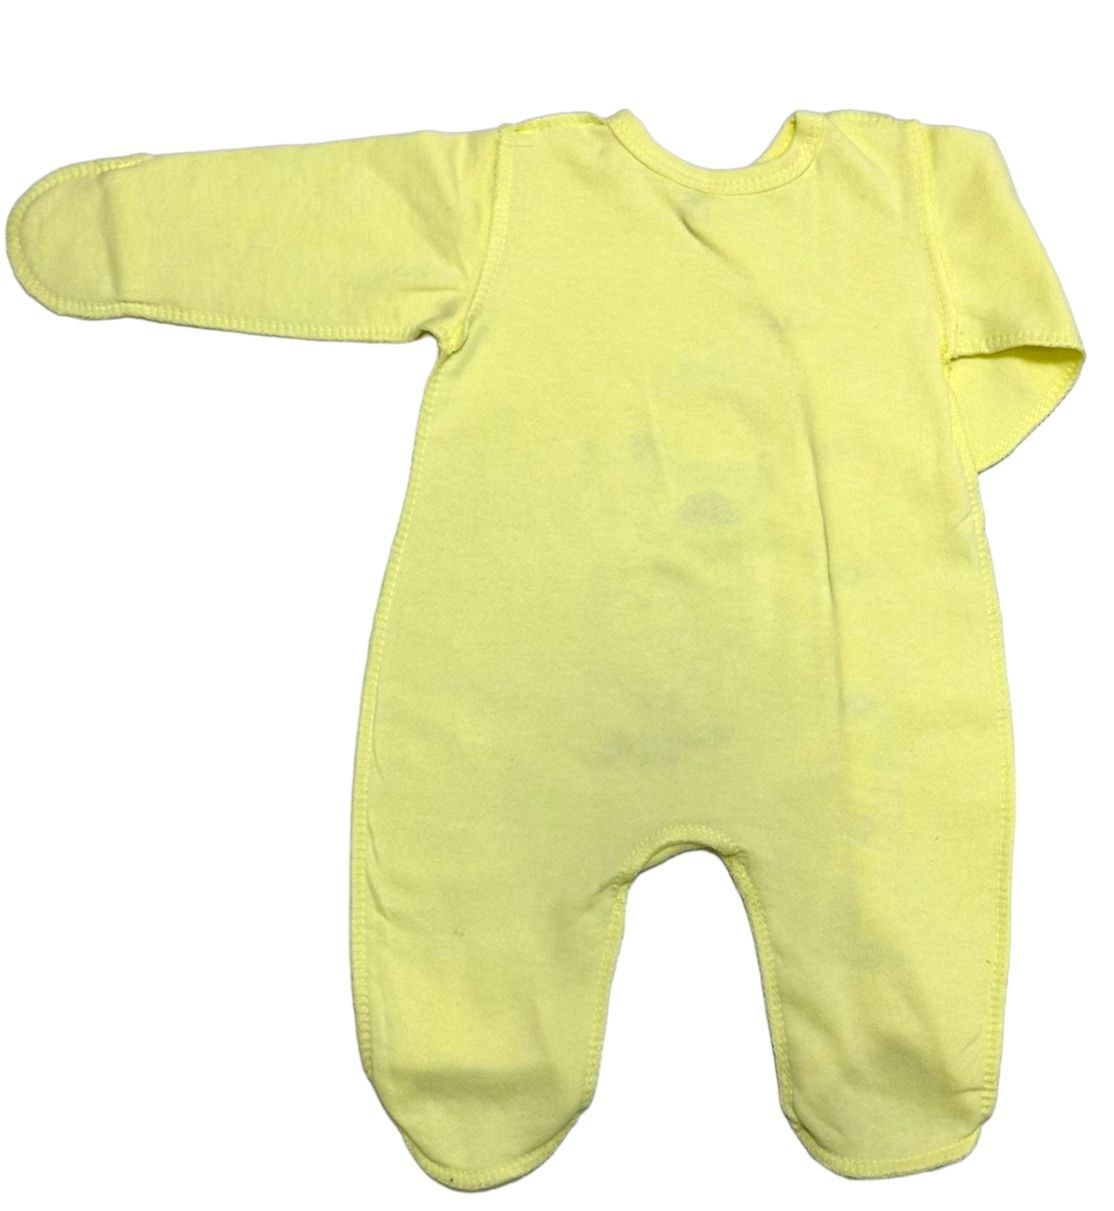 Ясельний трикотажний комбінезон для новорожденного. Комбинезон «ФУНТИК» однотонный начес жёлтого цвета. ТМ «Пташка Украина»